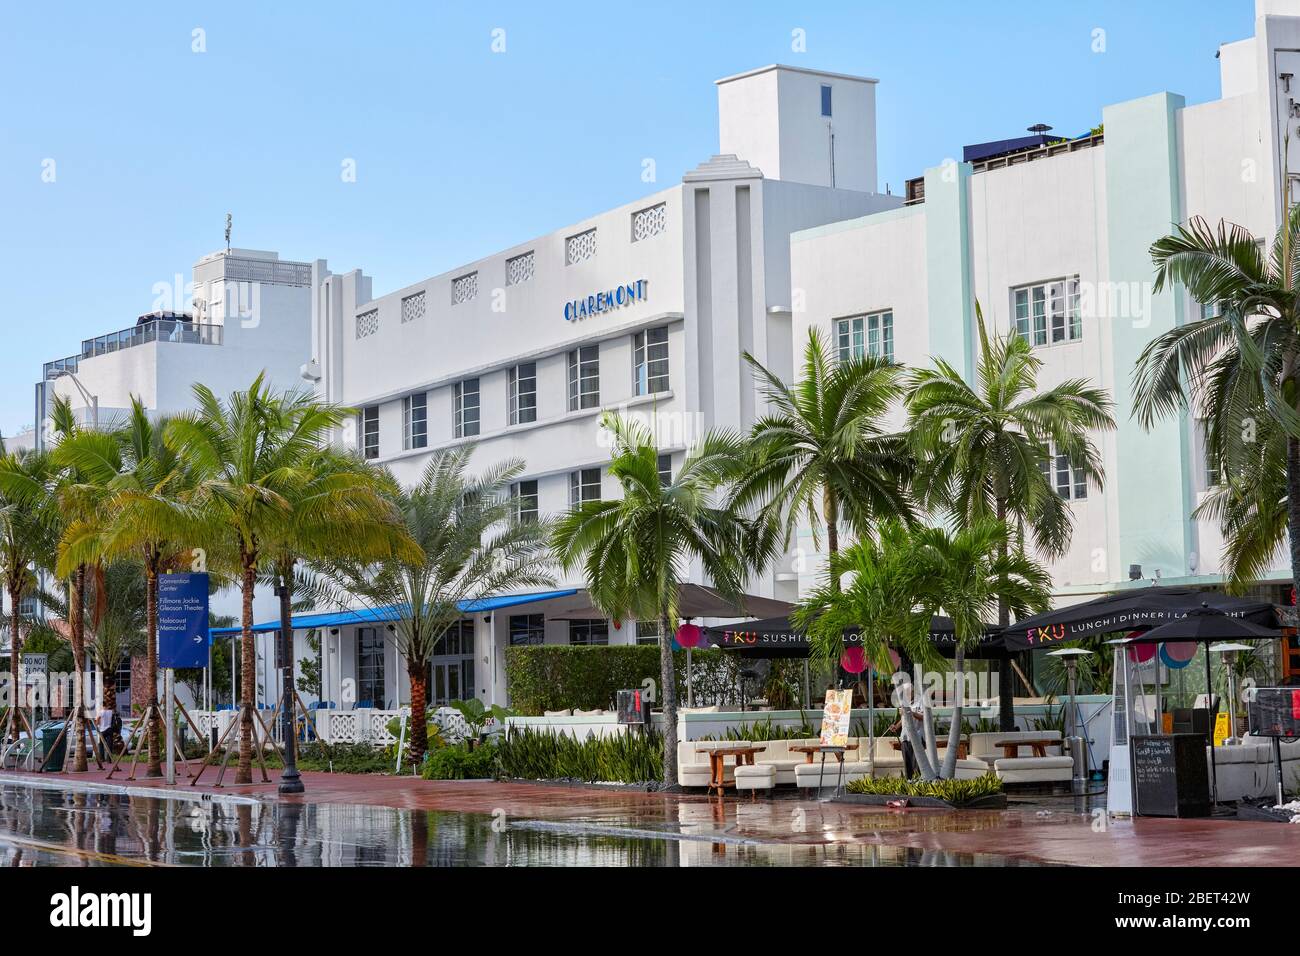 Le Premier Hotel Claremont sur Collins Ave à South Beach, Miami, Floride, États-Unis Banque D'Images